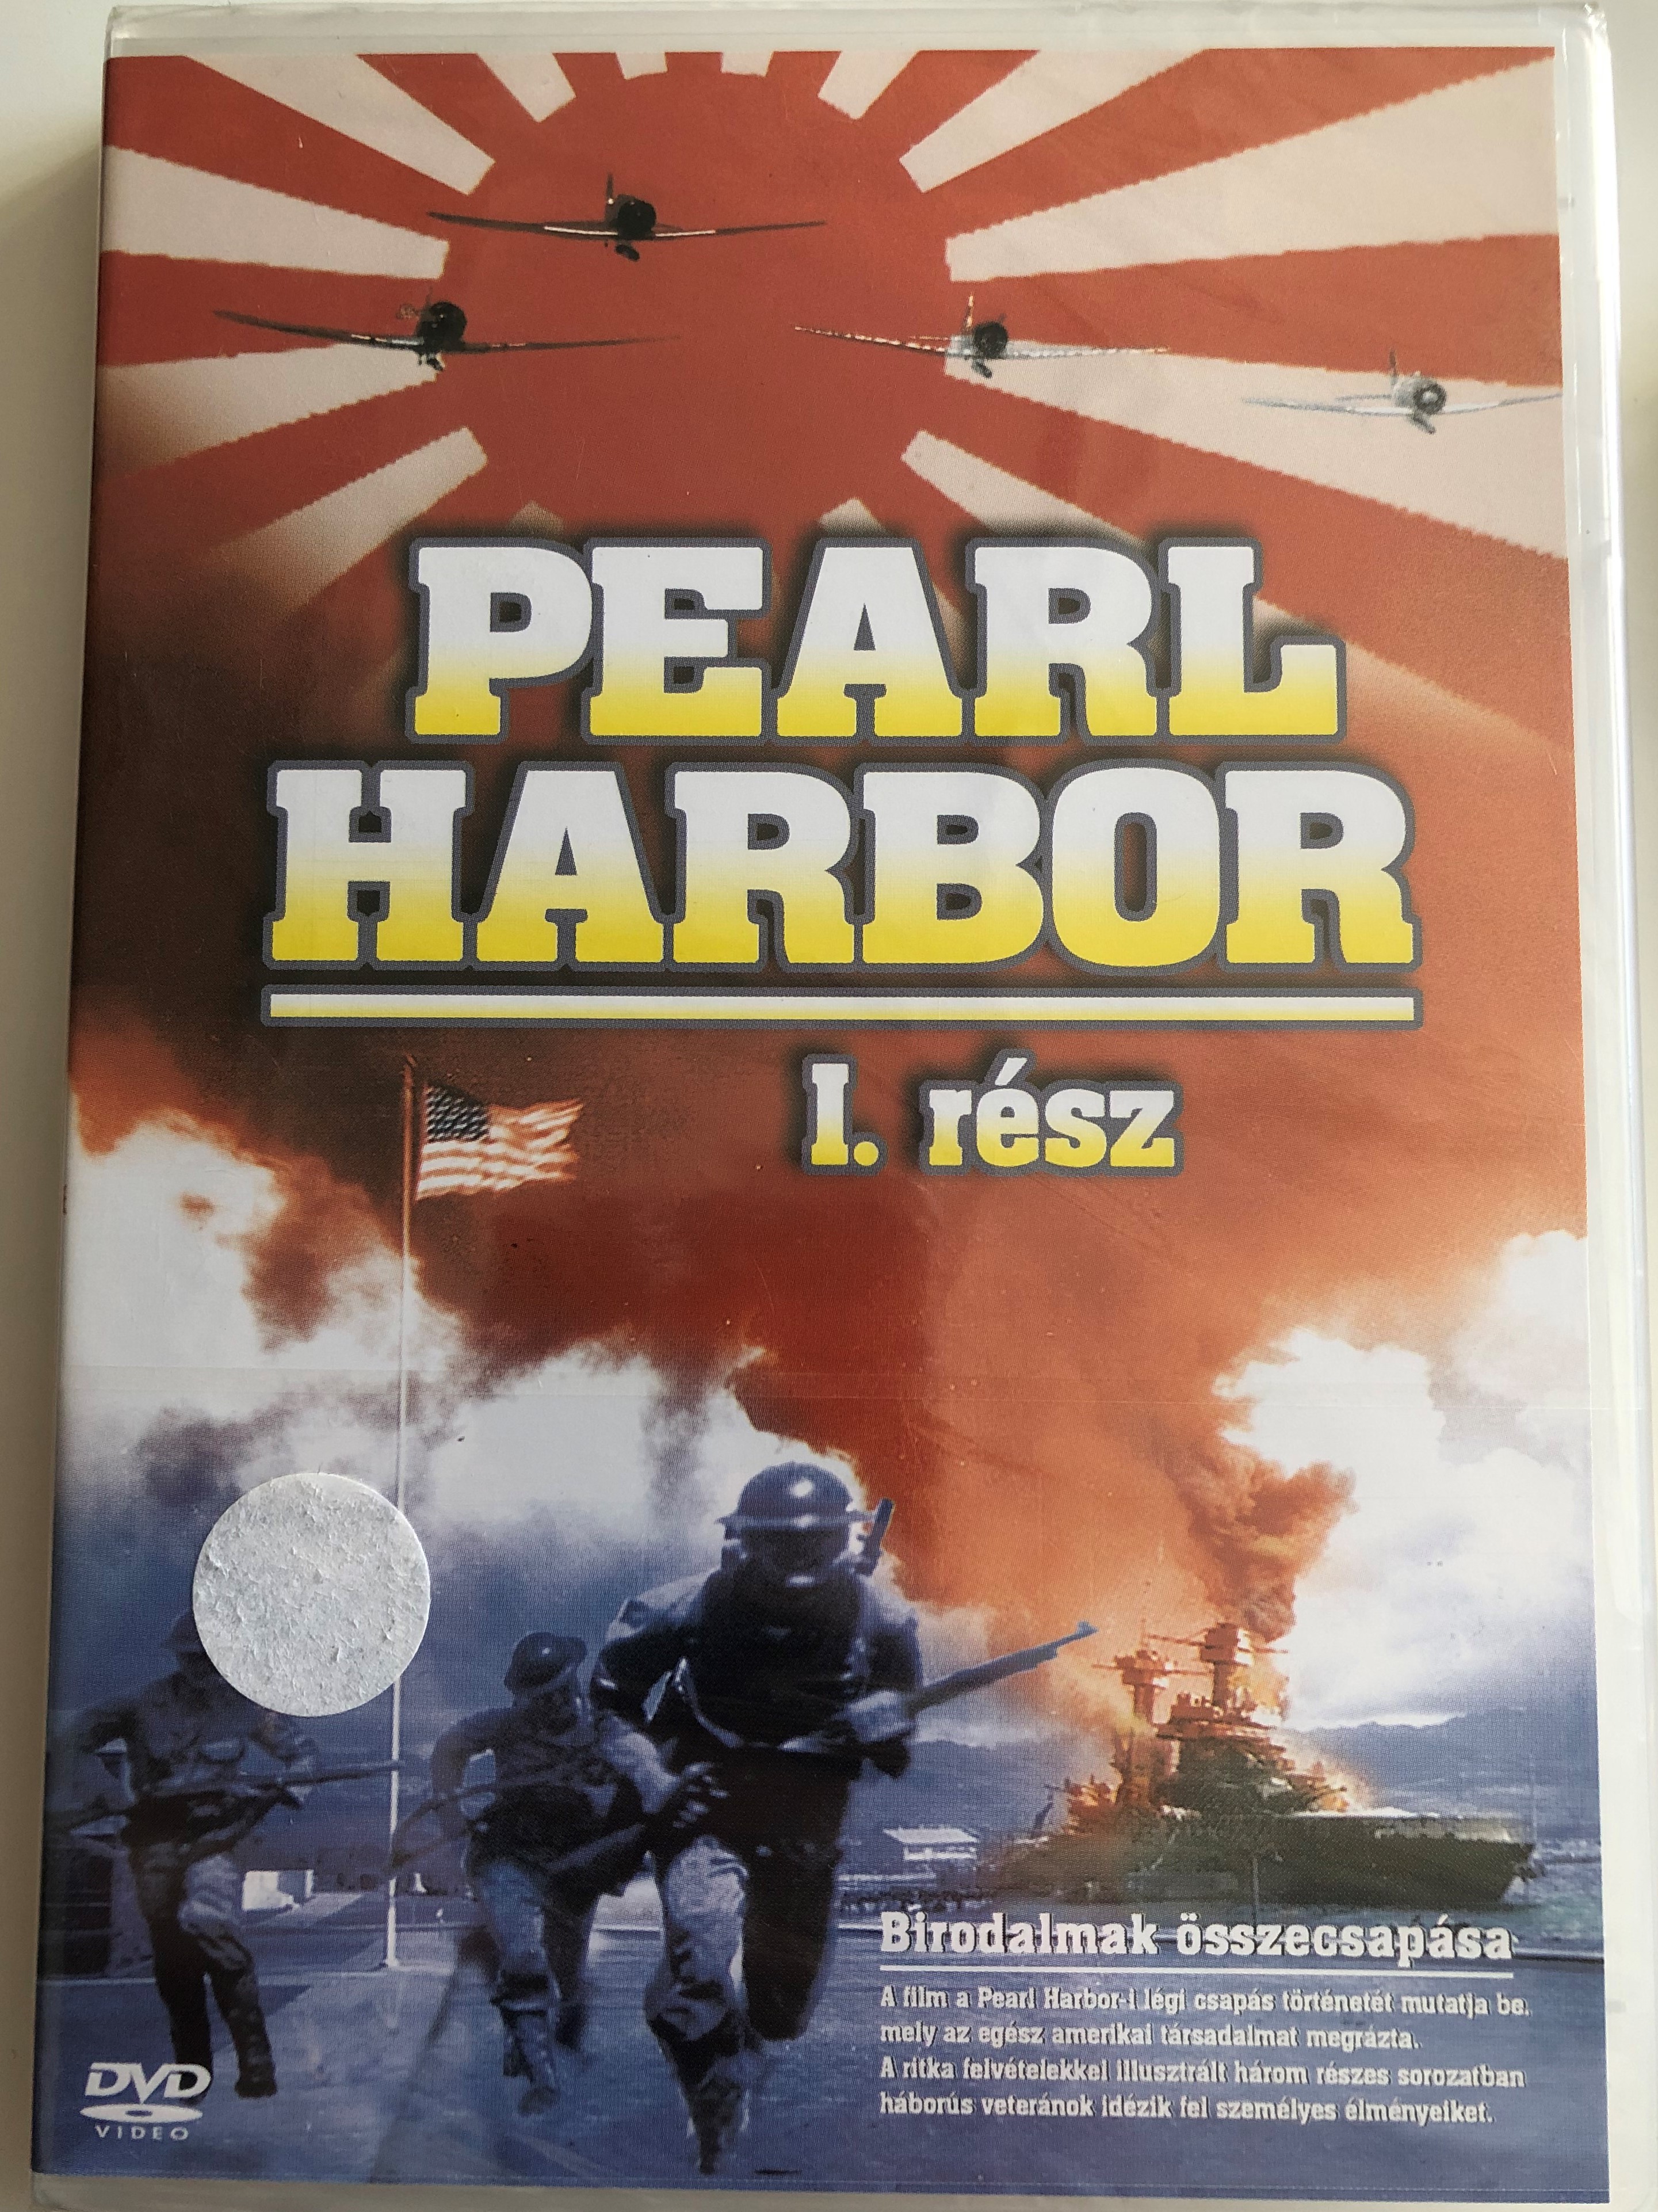 pearl-harbor-part-1-dvd-2004-pearl-harbor-i.-r-sz-birodalmak-sszecsap-sa-1.jpg